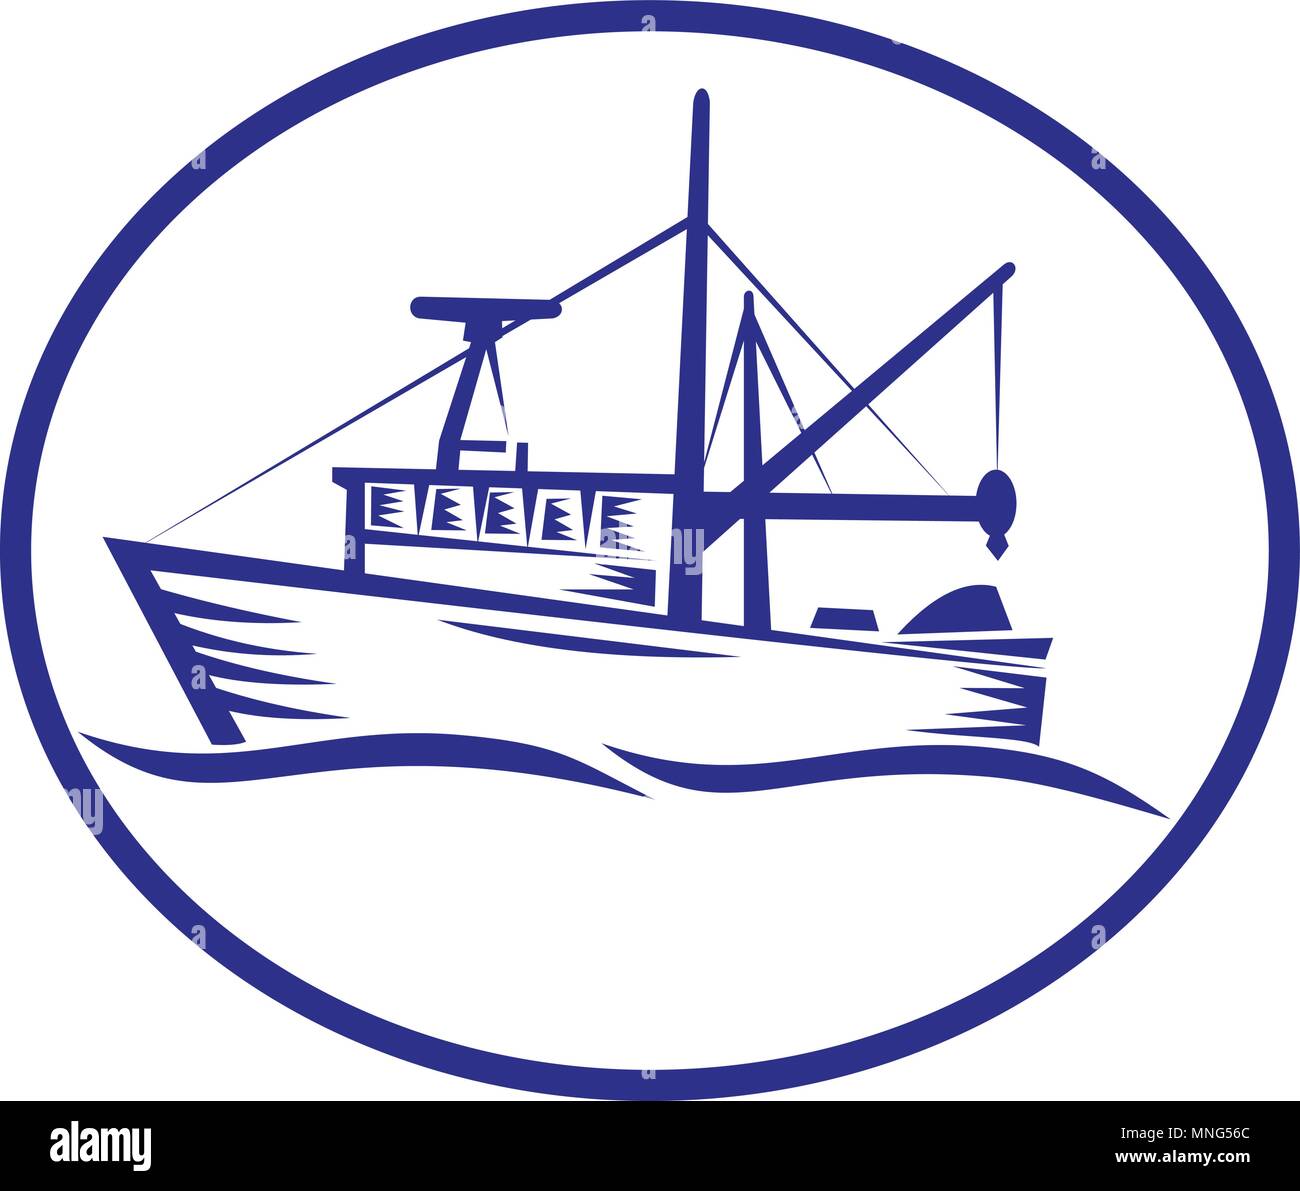 Retro style gravure sur bois illustration d'un bateau de pêche commercial défini à l'intérieur de la forme ovale sur fond isolé. Illustration de Vecteur